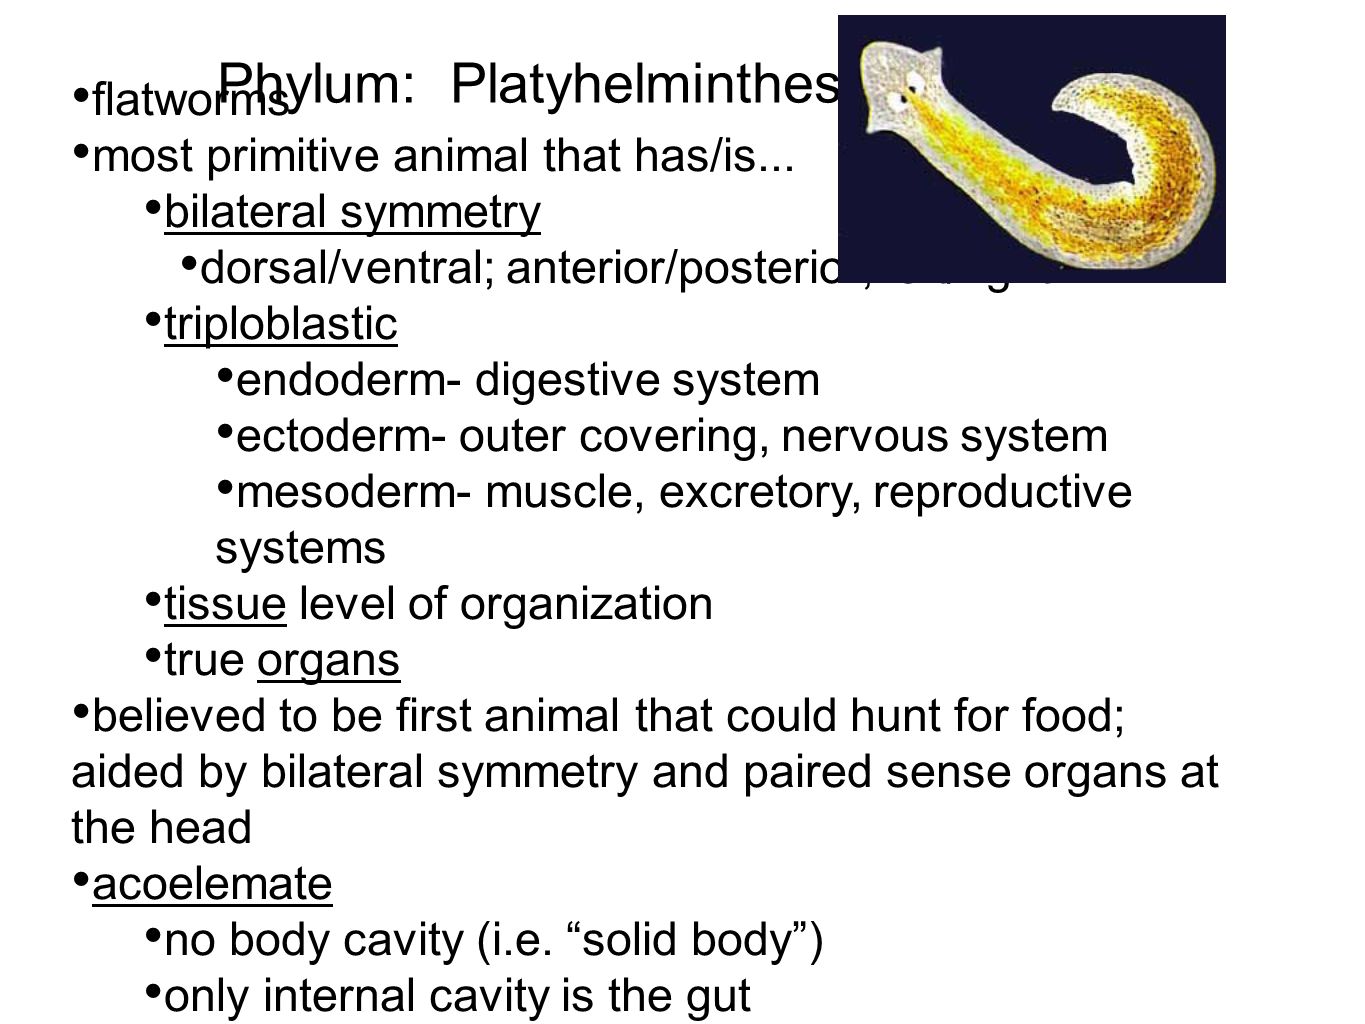 a phylum platyhelminthes definíciója